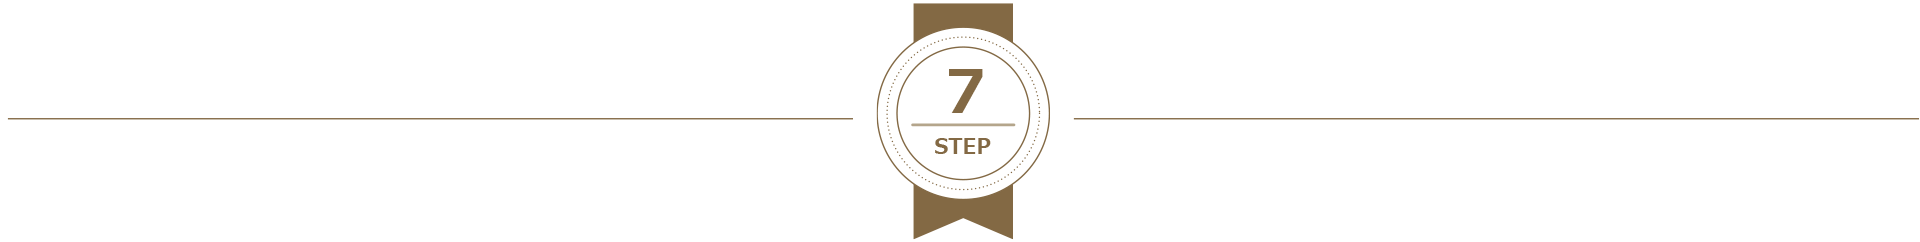 受講の流れ7 STEP